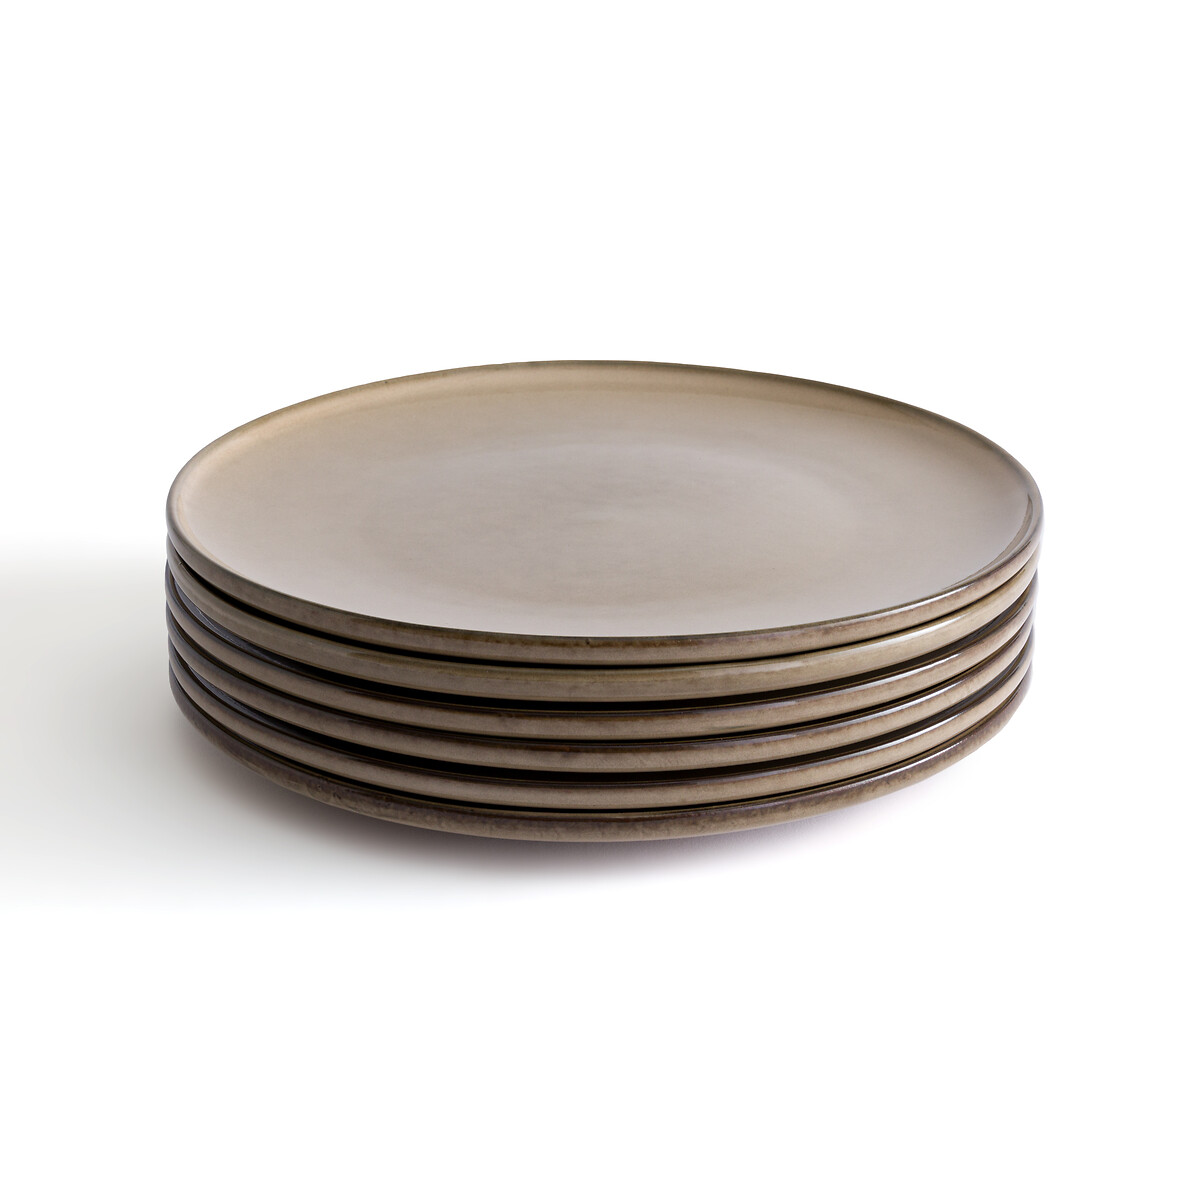 Комплект из 6 плоских тарелок из керамики Onda единый размер бежевый комплект из четырех плоских тарелок из керамики cream единый размер бежевый